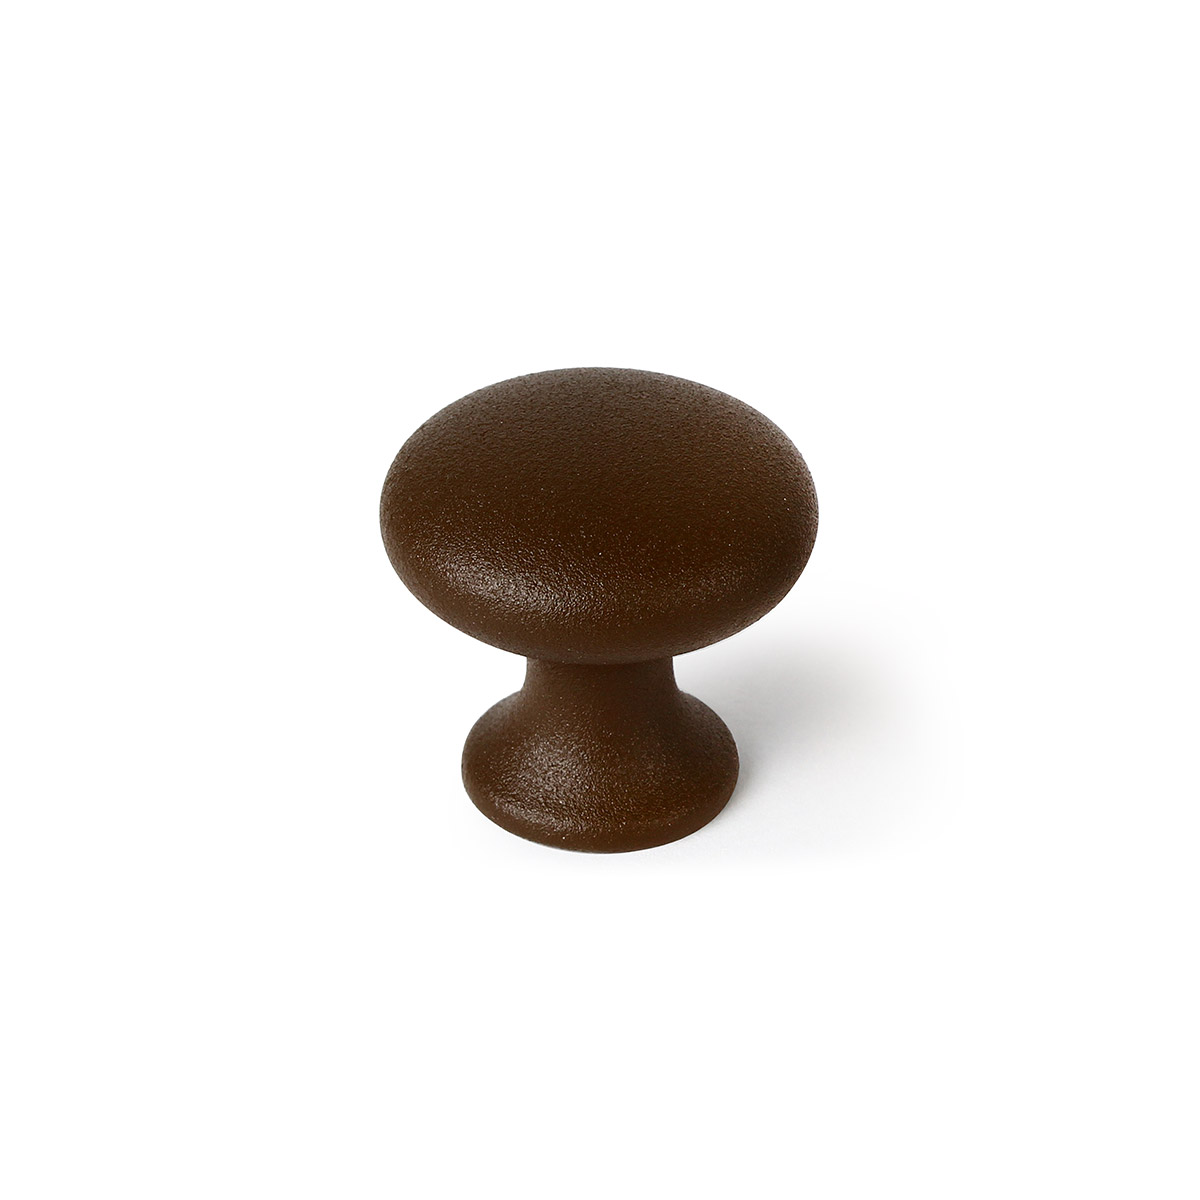 Pomo de zamak con acabado marrón, dimensiones:30x30x30mm y Ø: 30mm